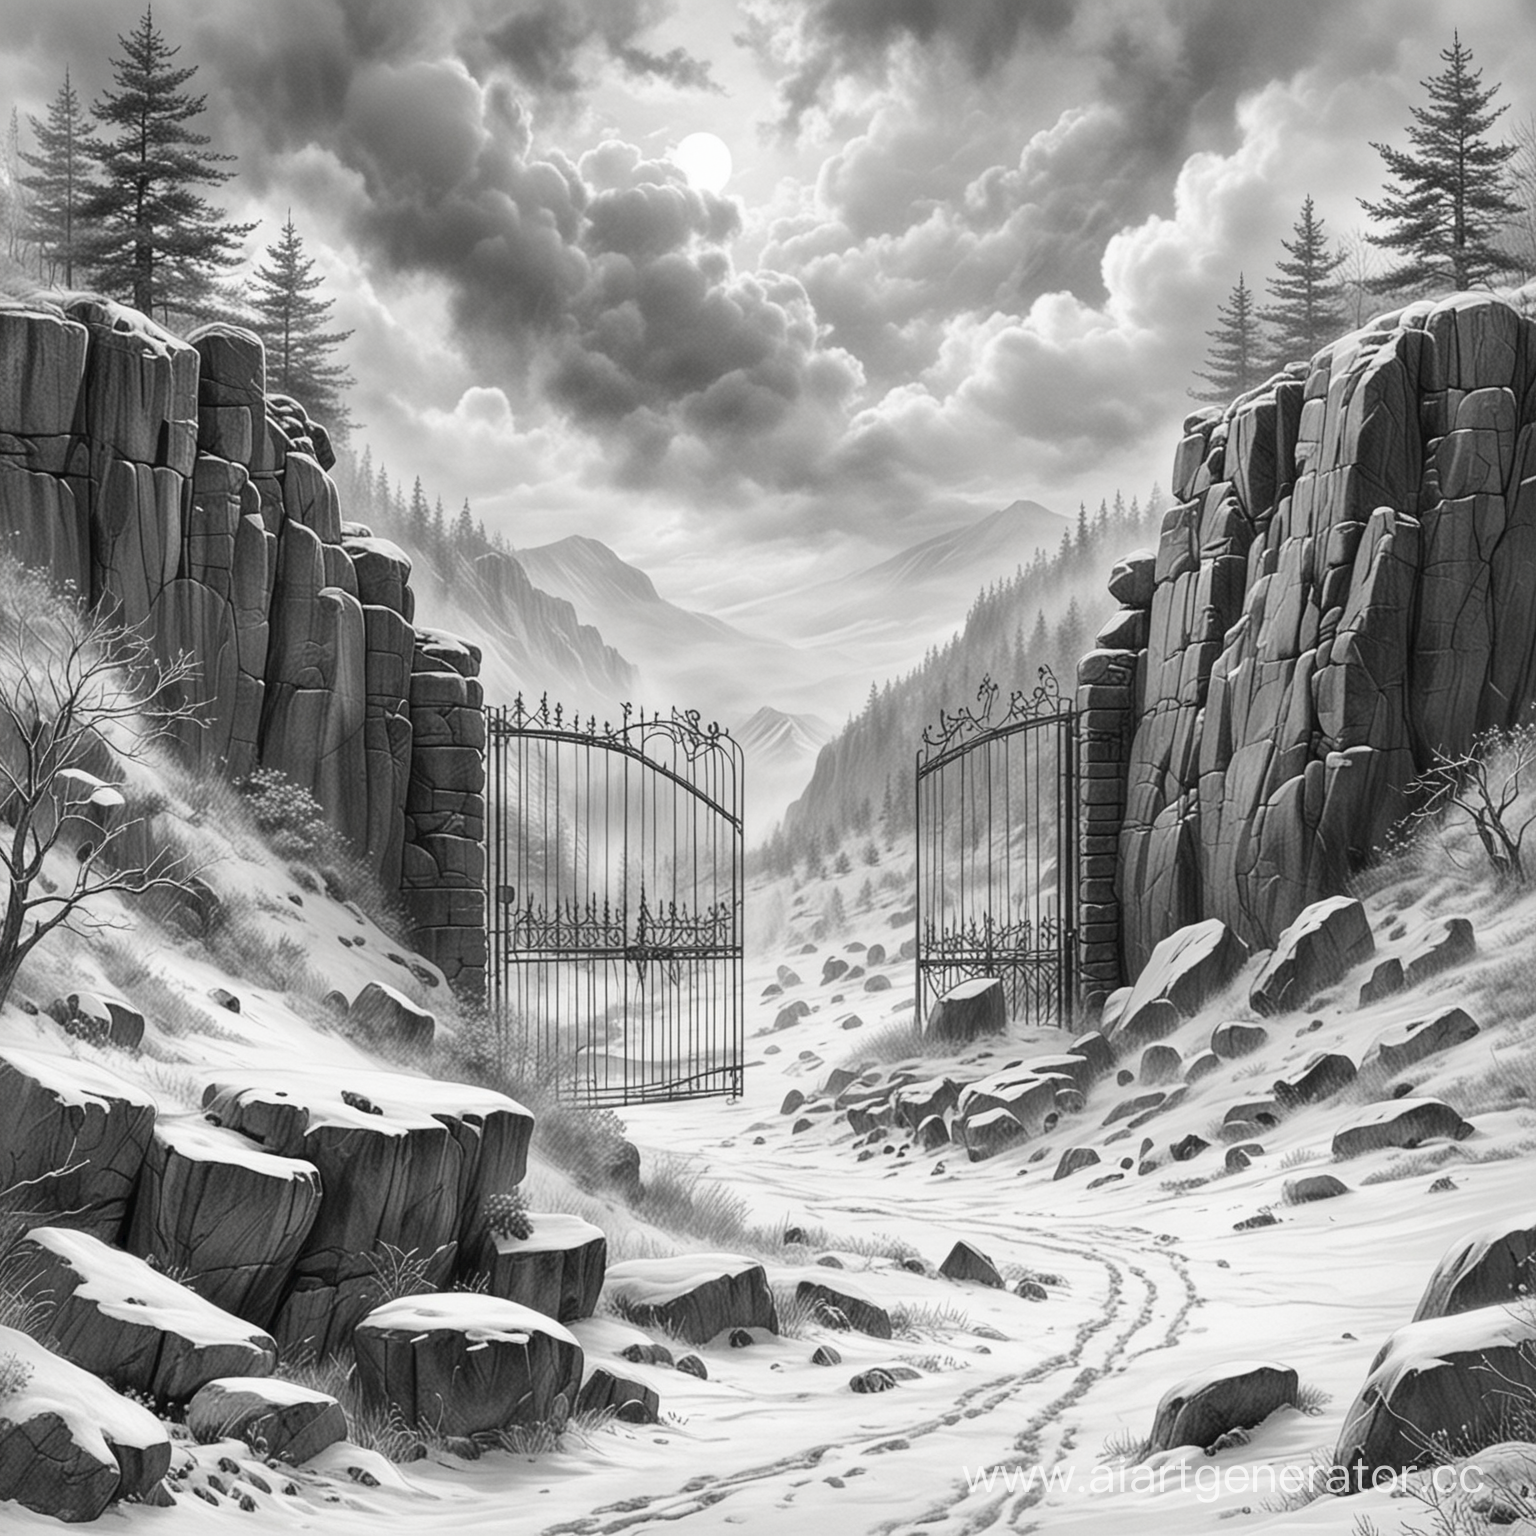 нарисованное карандашом, призрачные врата в скалах, на заднем плане холмы зимний лес в снегу в тумане в небе тяжелые облака
